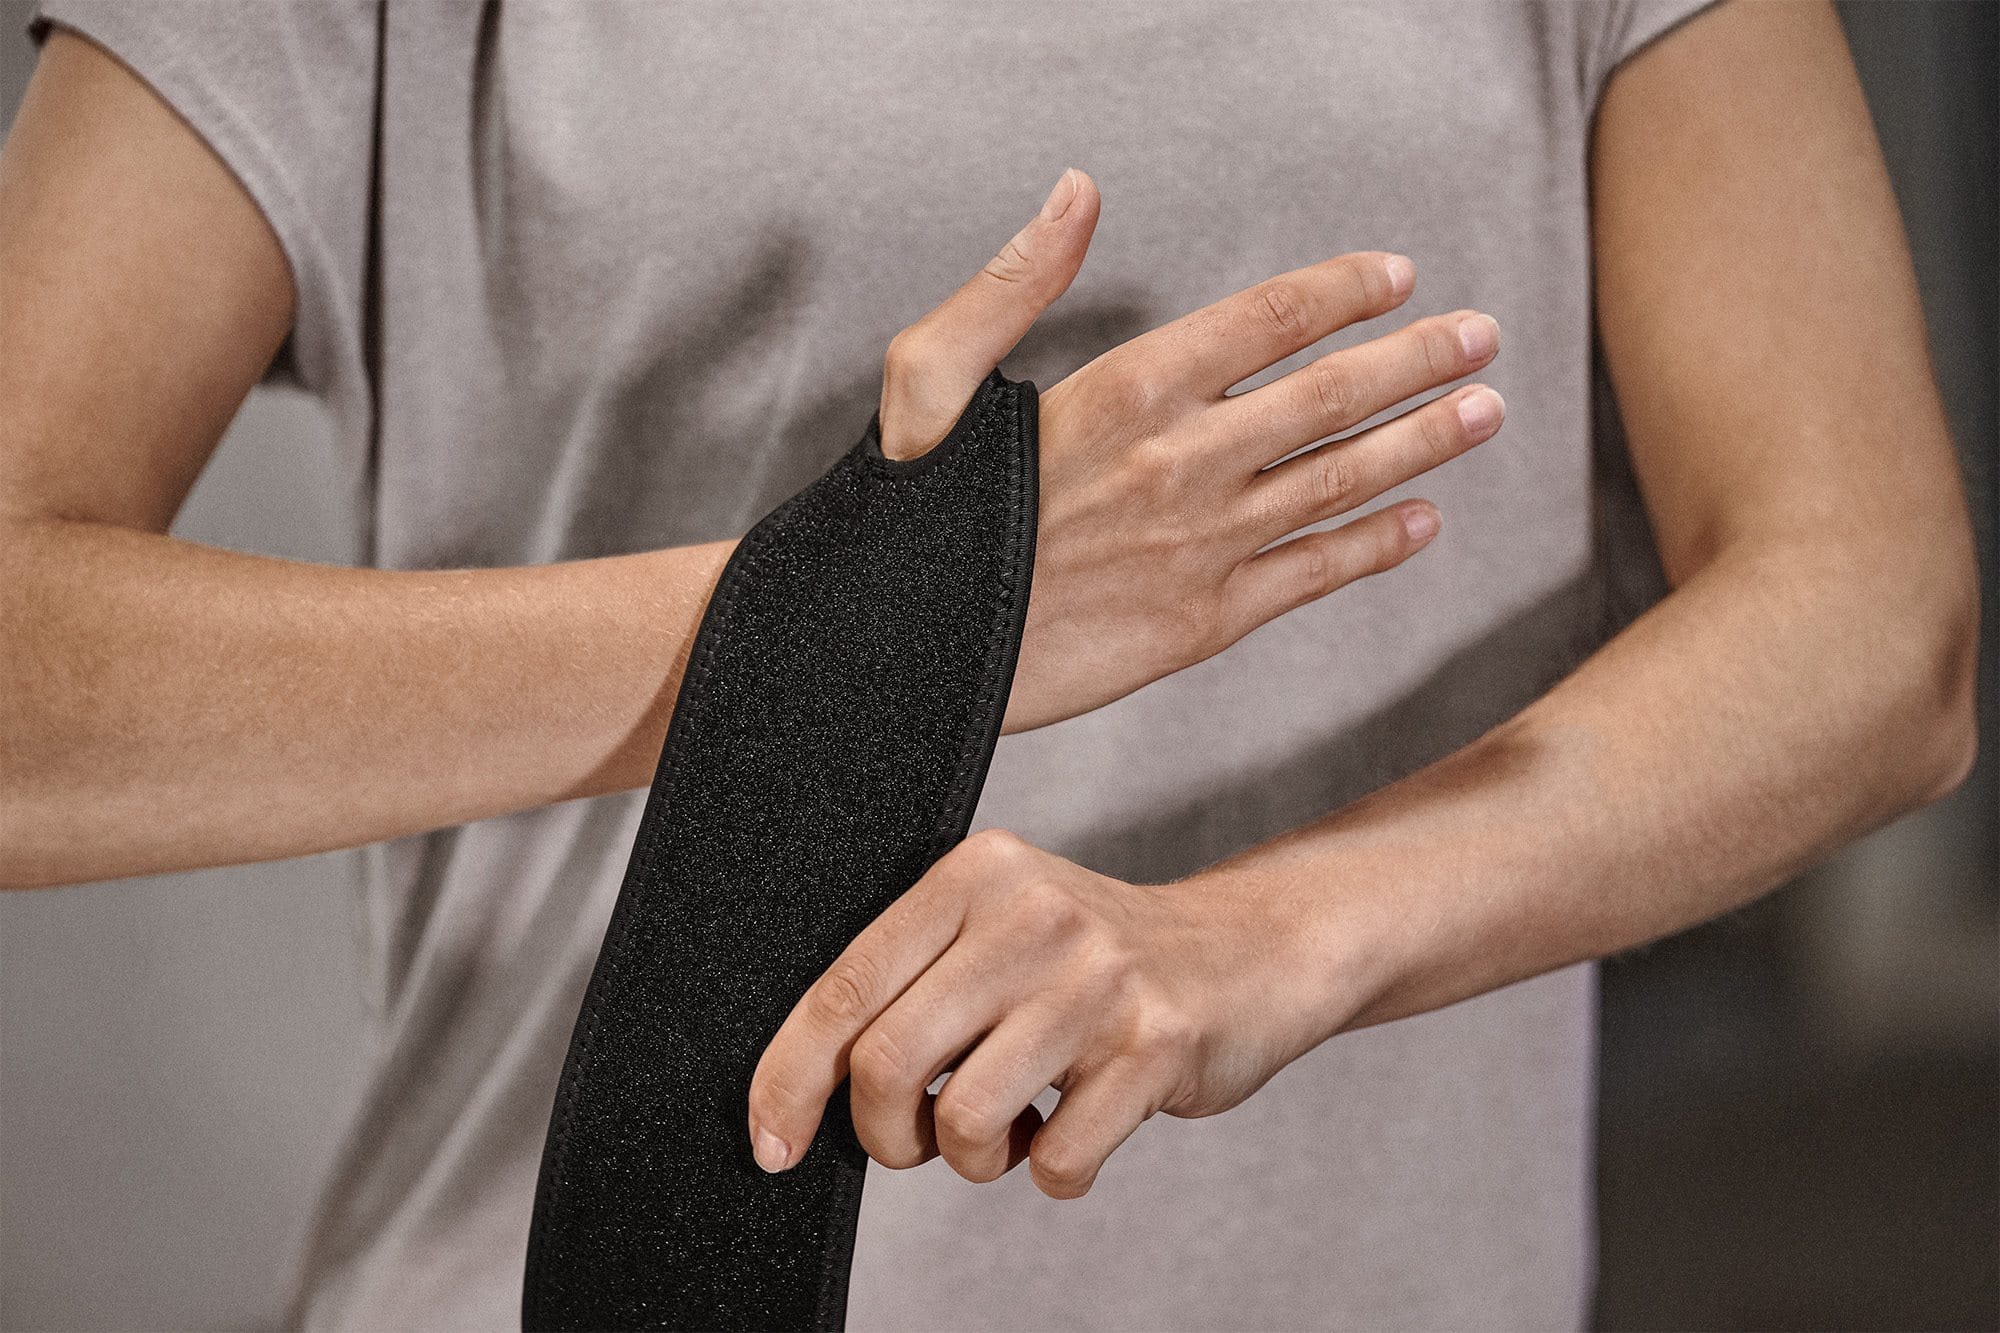 Protective Handgelenk-Bandage Schritt 1